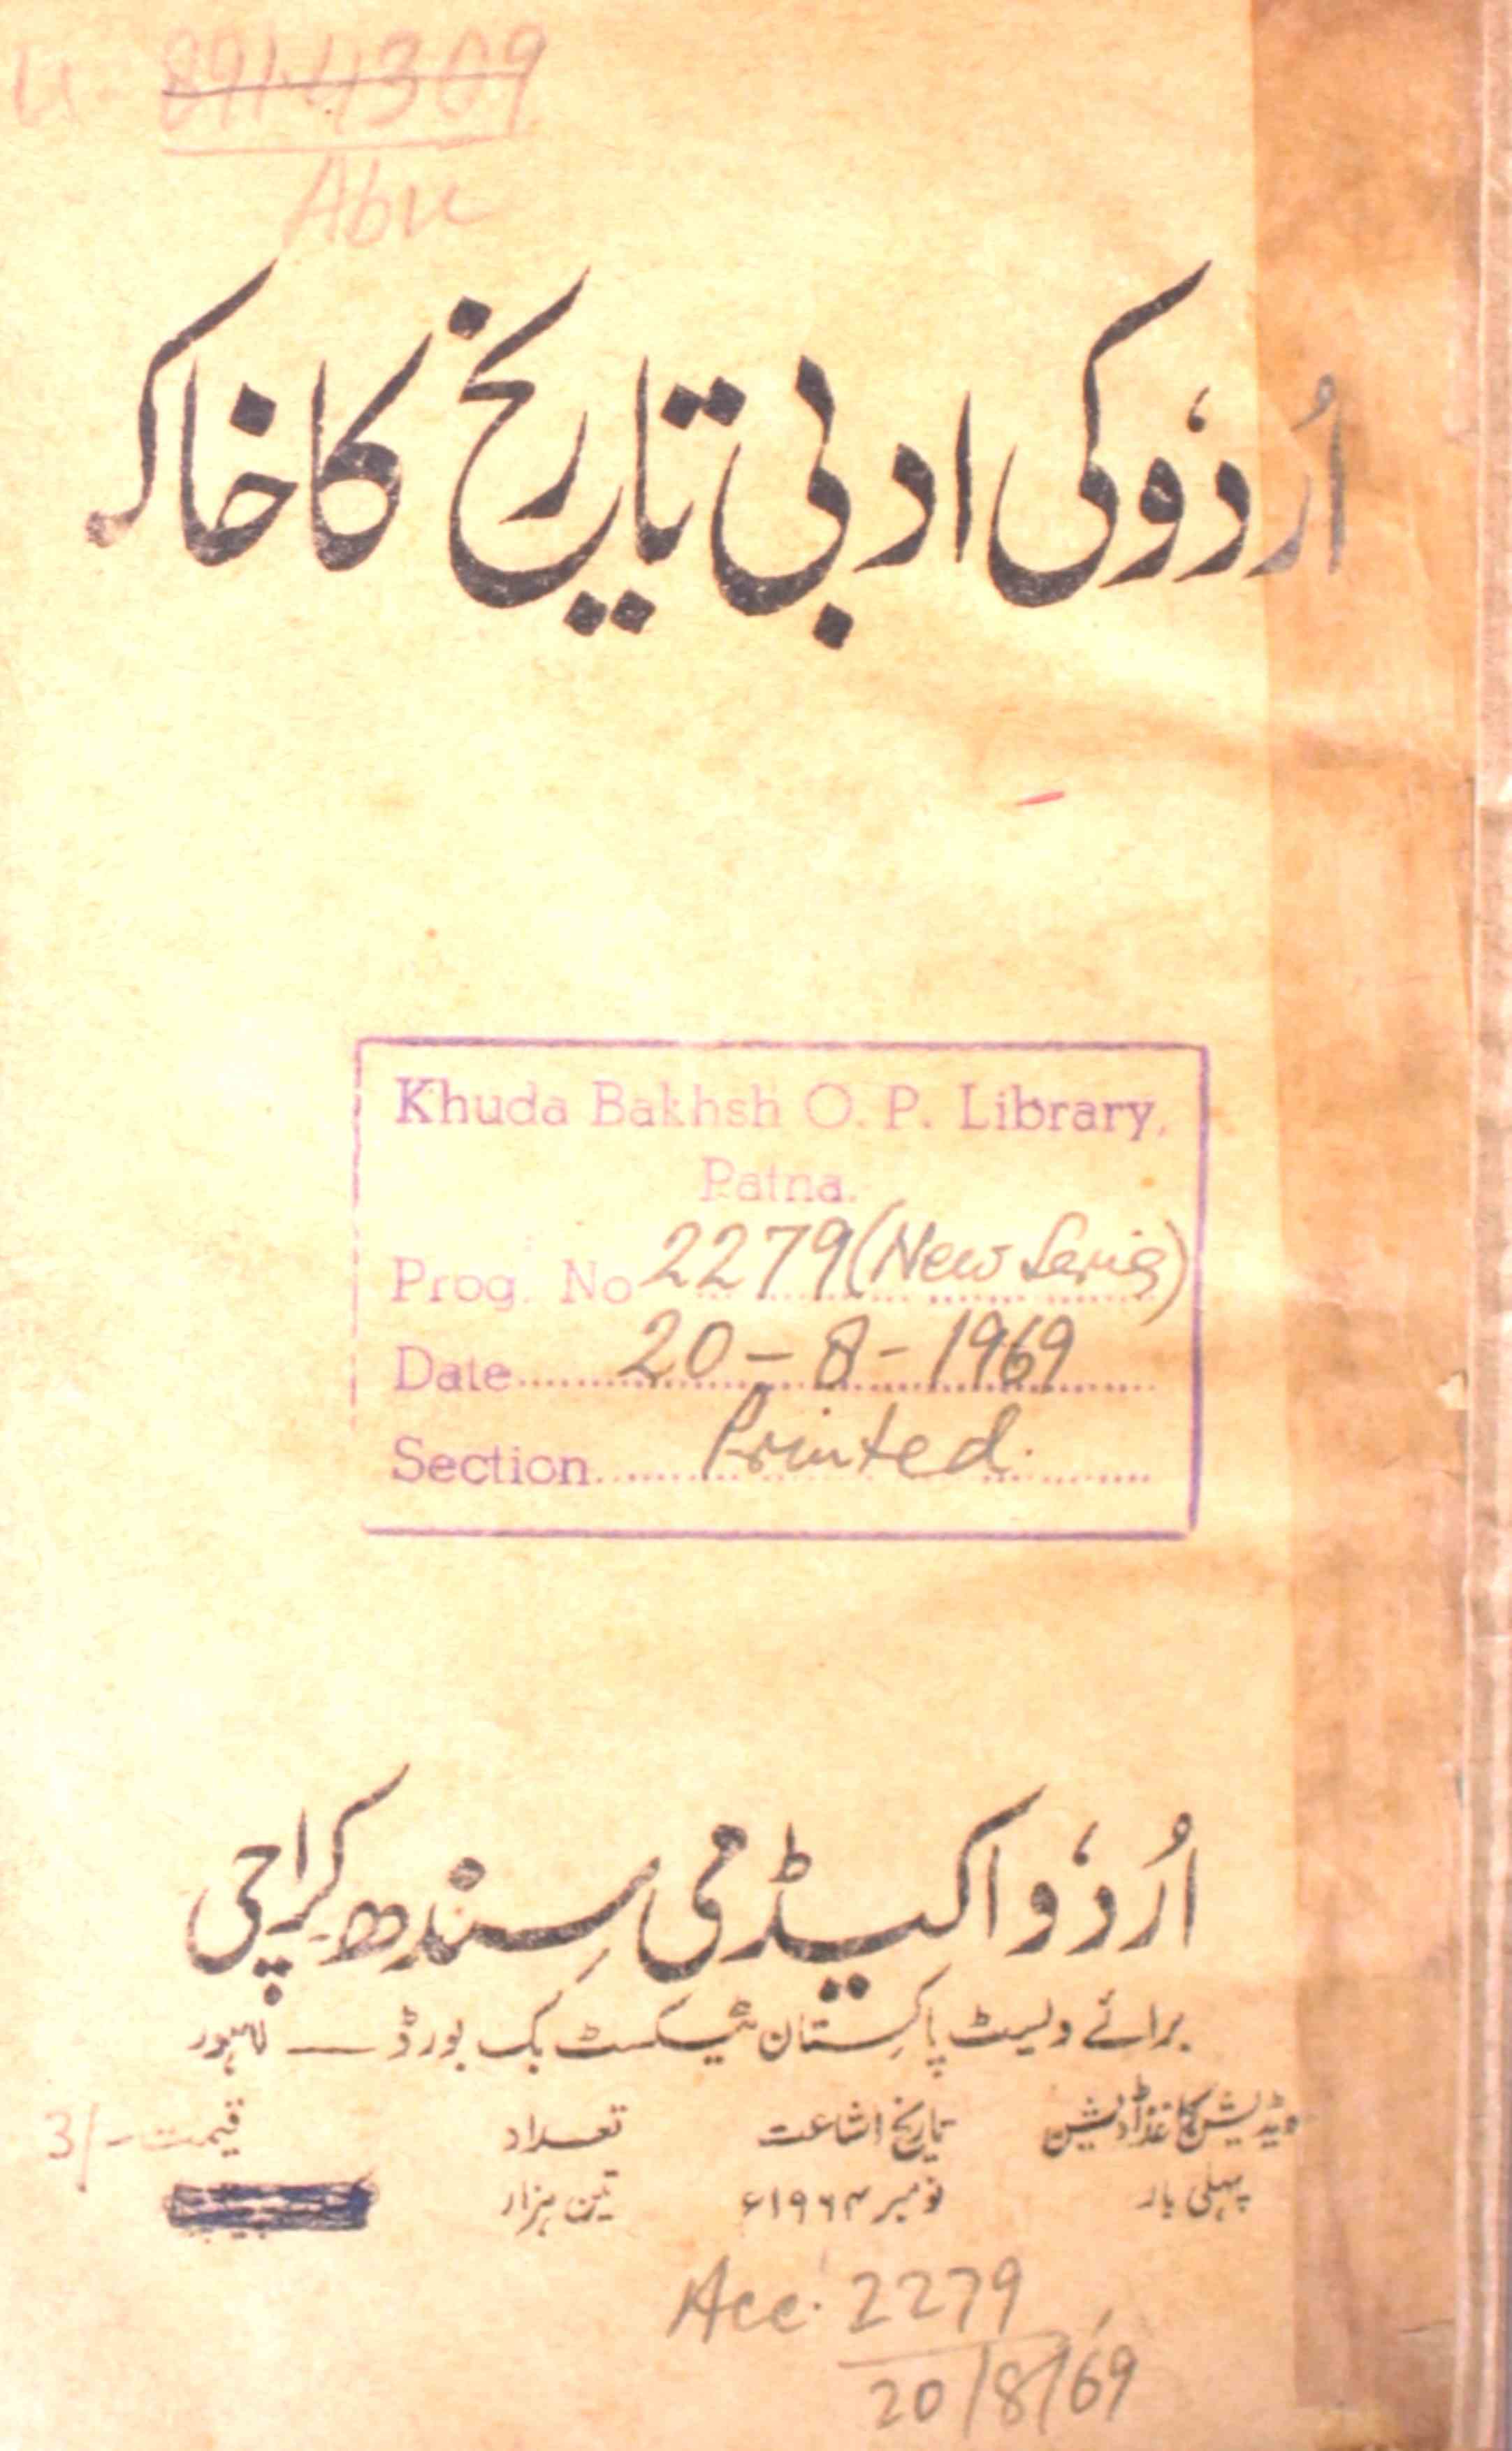 اردو کی ادبی تاریخ کا خاکہ